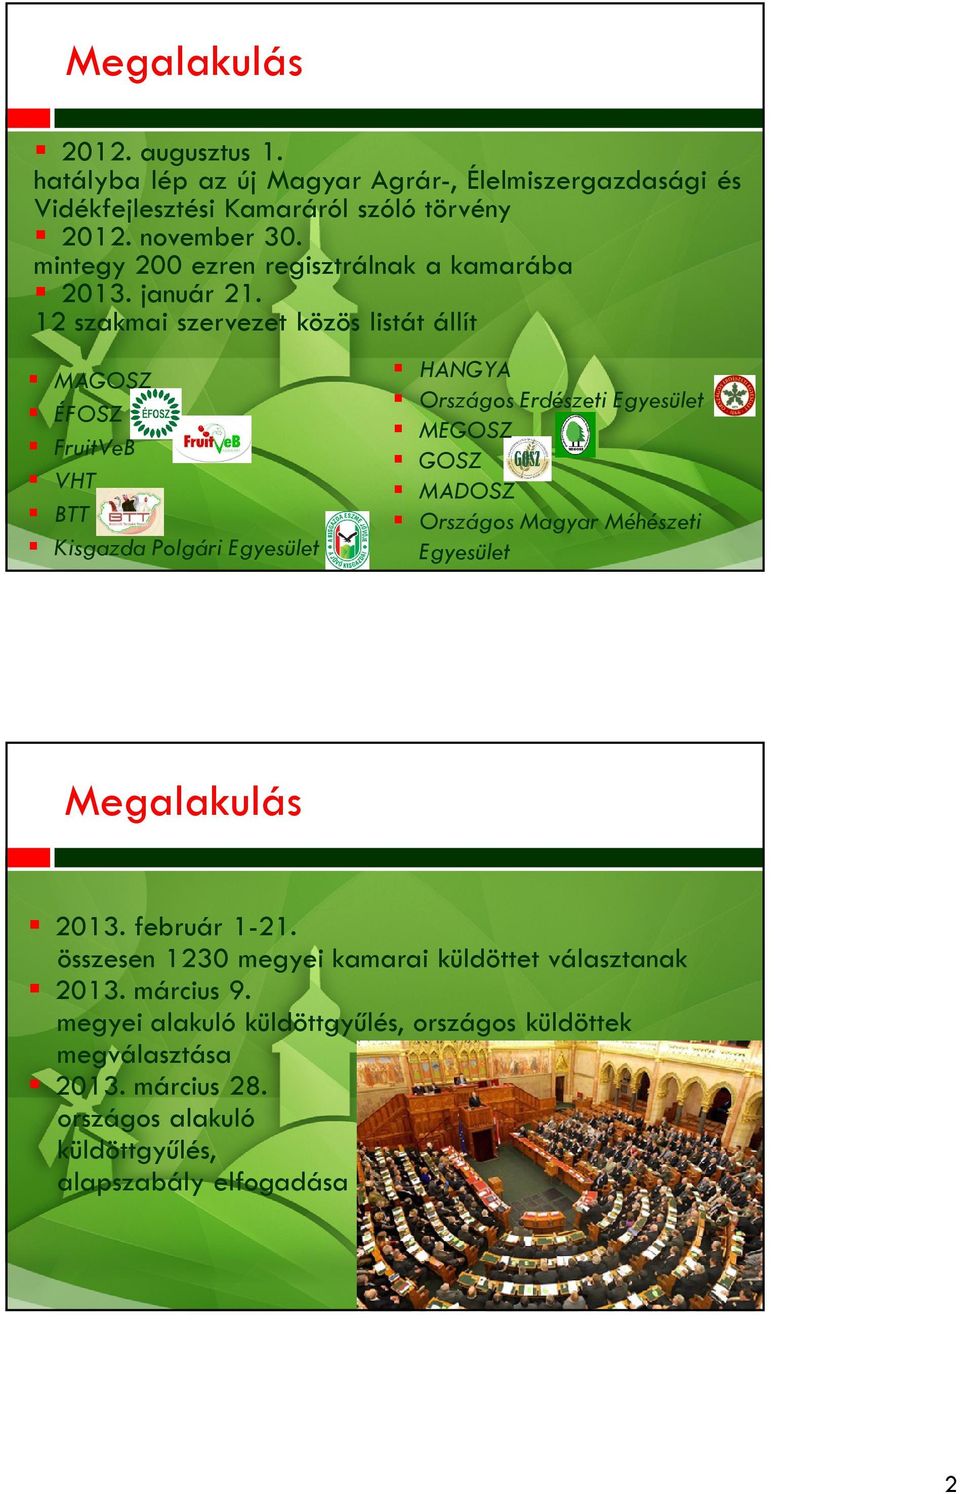 12 szakmai szervezet közös listát állít MAGOSZ ÉFOSZ FruitVeB VHT BTT Kisgazda Polgári Egyesület HANGYA Országos Erdészeti Egyesület MEGOSZ GOSZ MADOSZ